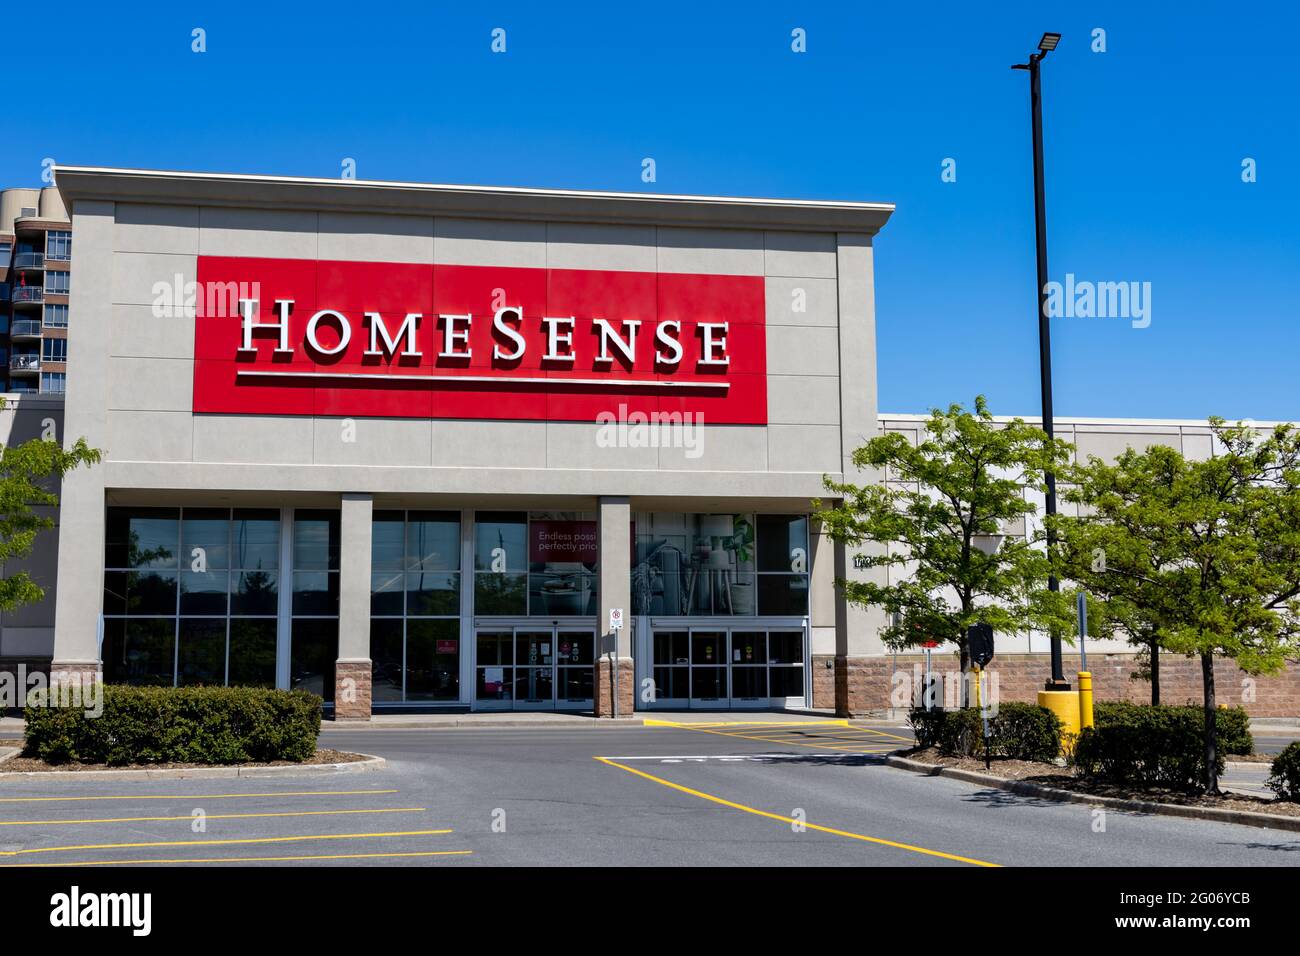 Ottawa, Ontario, Kanada - 31. Mai 2021: Ein HomeSense-Einzelhandelsgeschäft für Heimtextilien, das sich im Besitz von TJX Companies (NYSE: TJX) an der Merivale Road befindet. Stockfoto